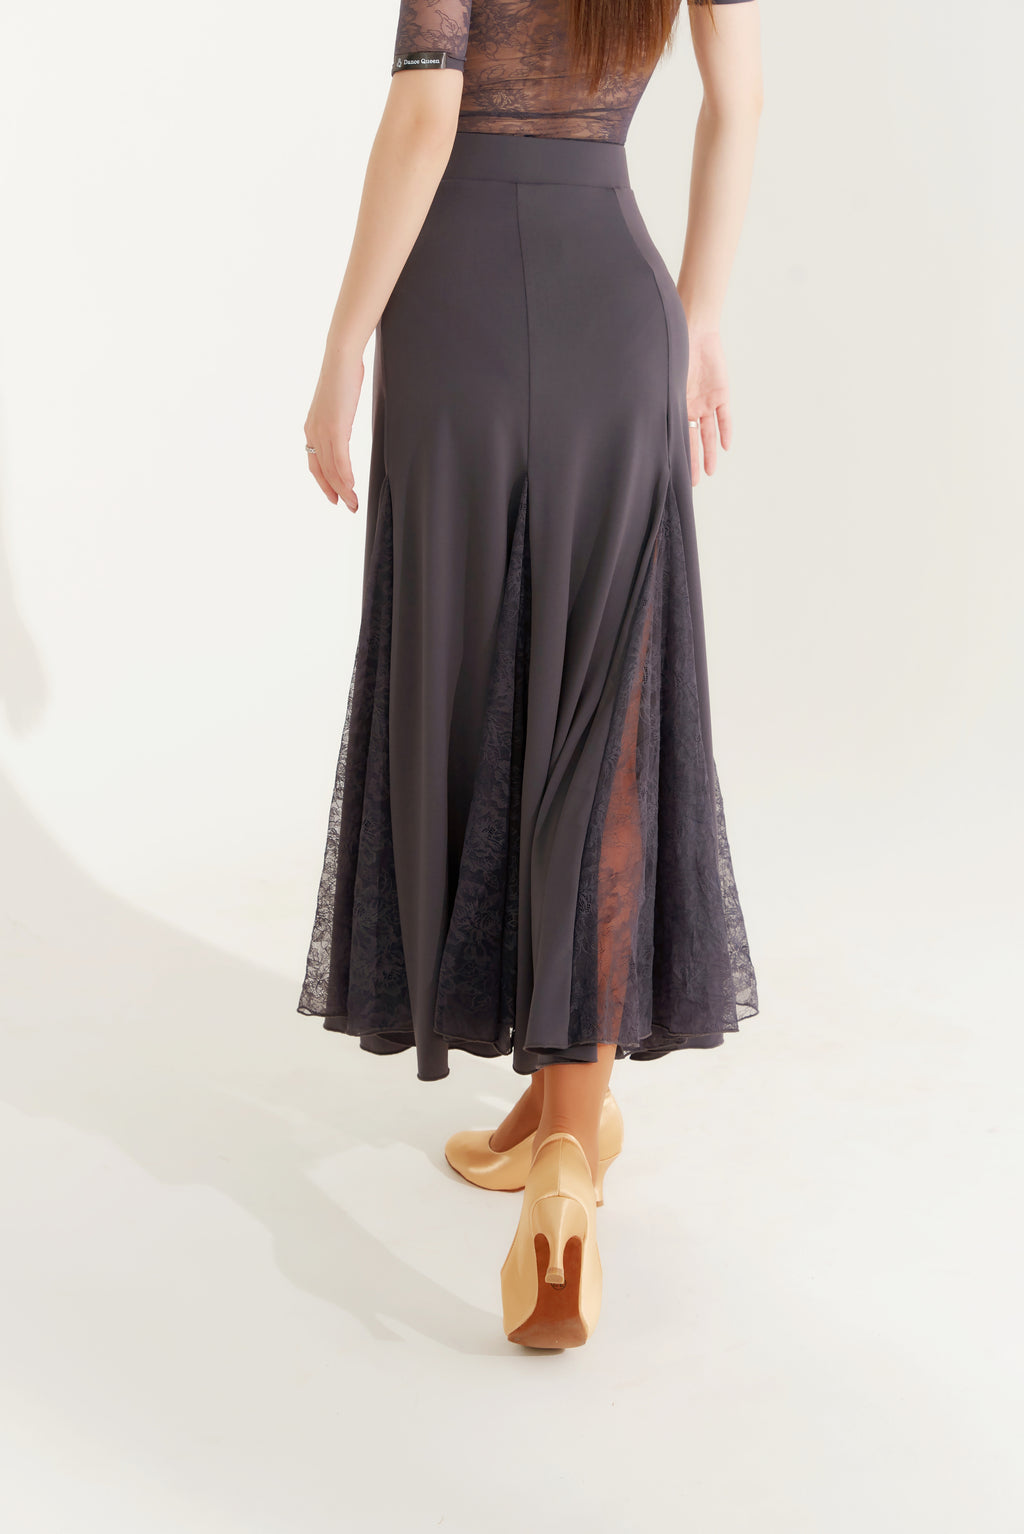 DQ393-3 Lace Insert Godet Skirt